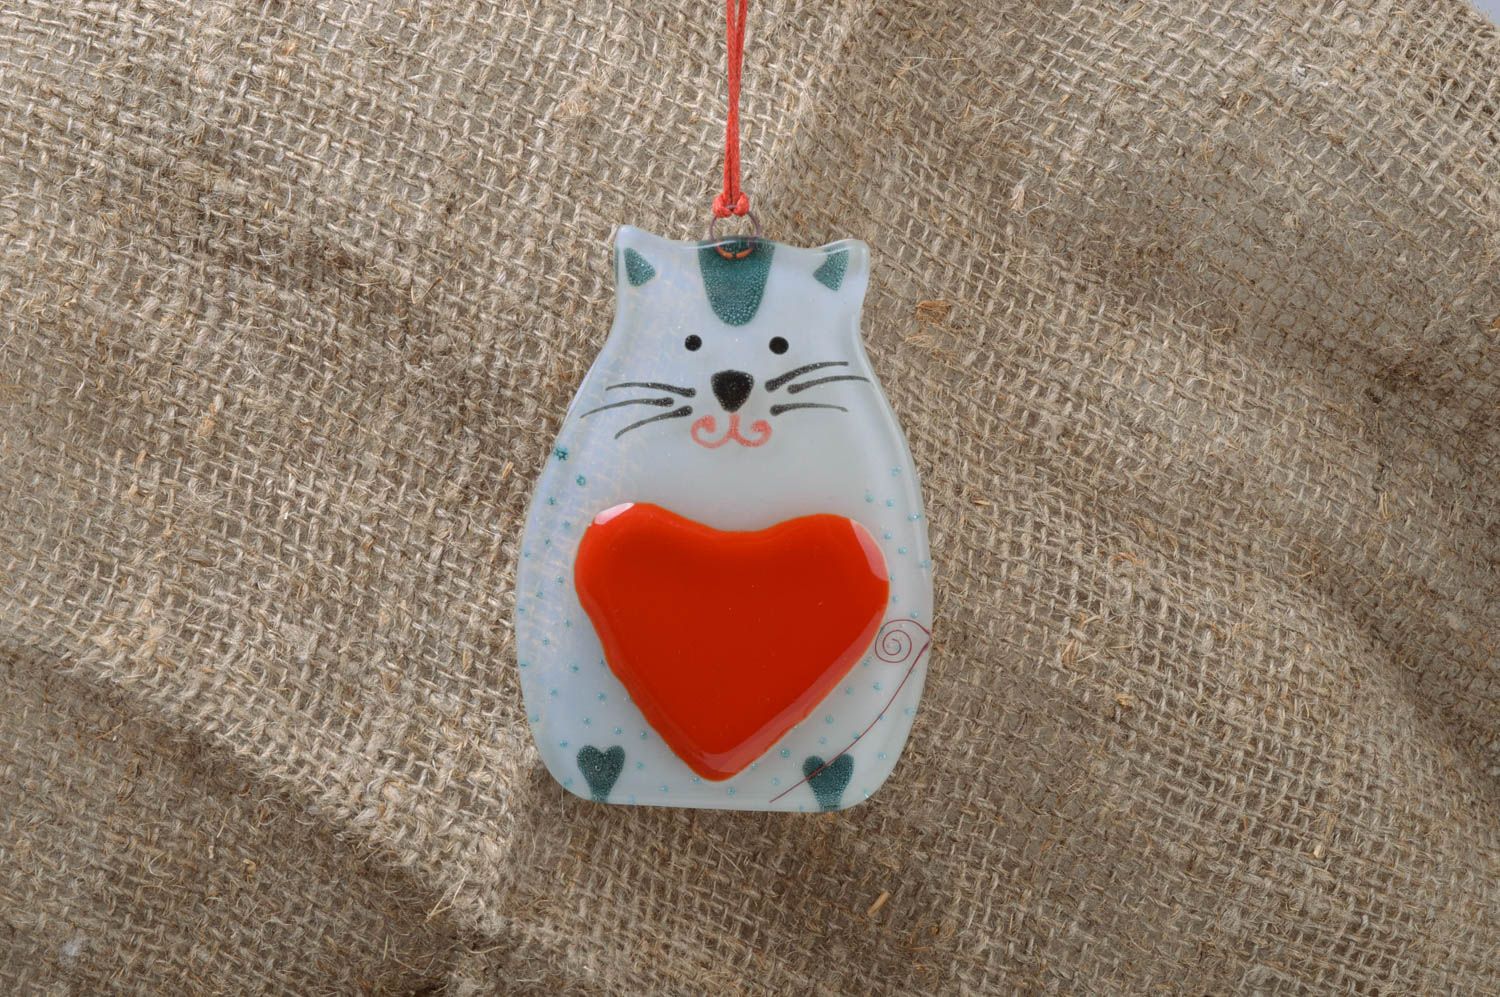 Интерьерная подвеска в виде кота с сердцем небольшая на шнурке ручная работа фото 1